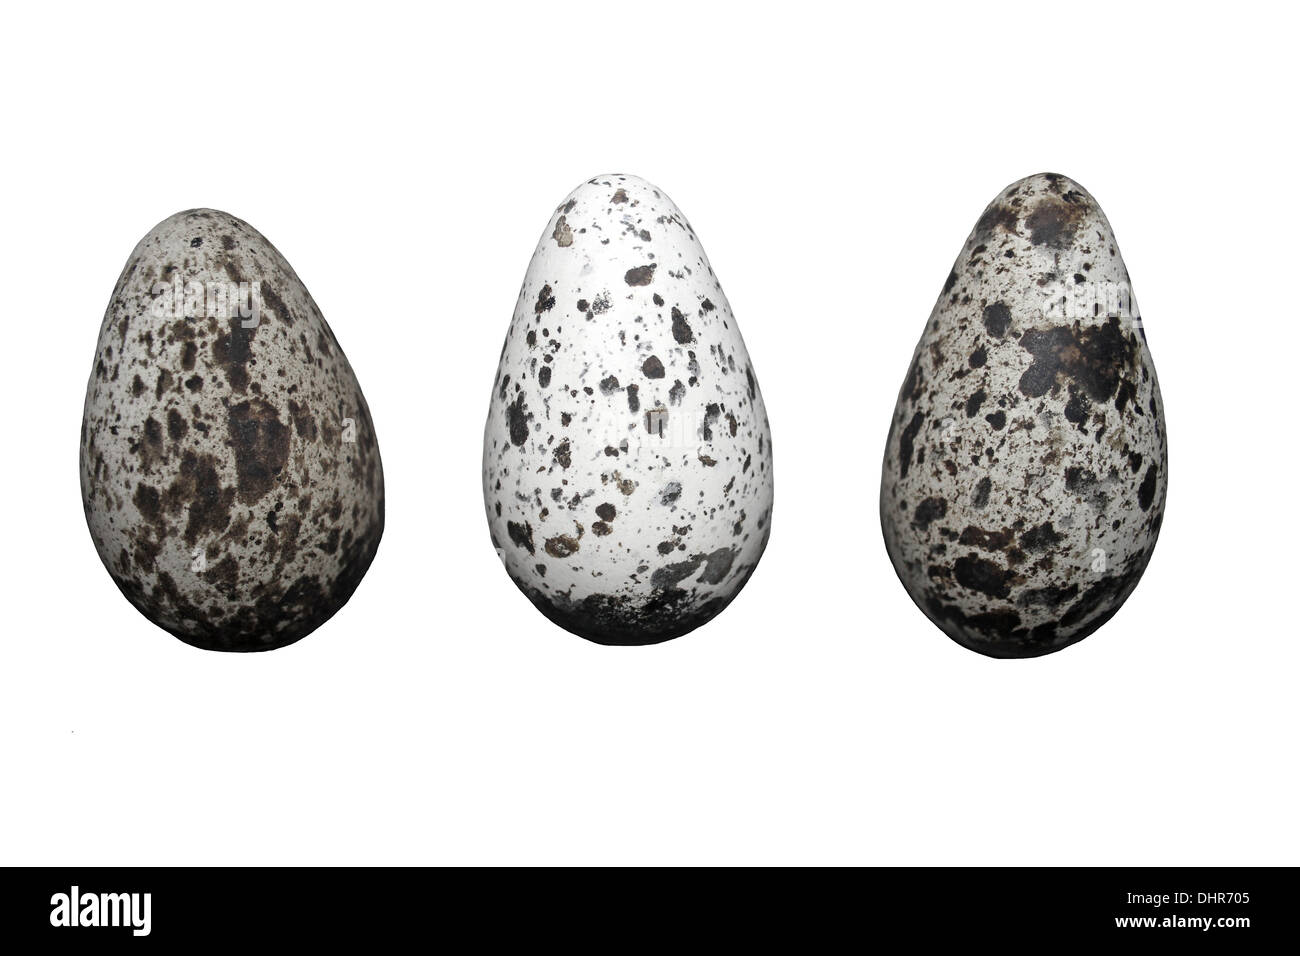 Tre Comuni Guillemot Uria aalge uova che mostra la variazione nella modellazione Foto Stock